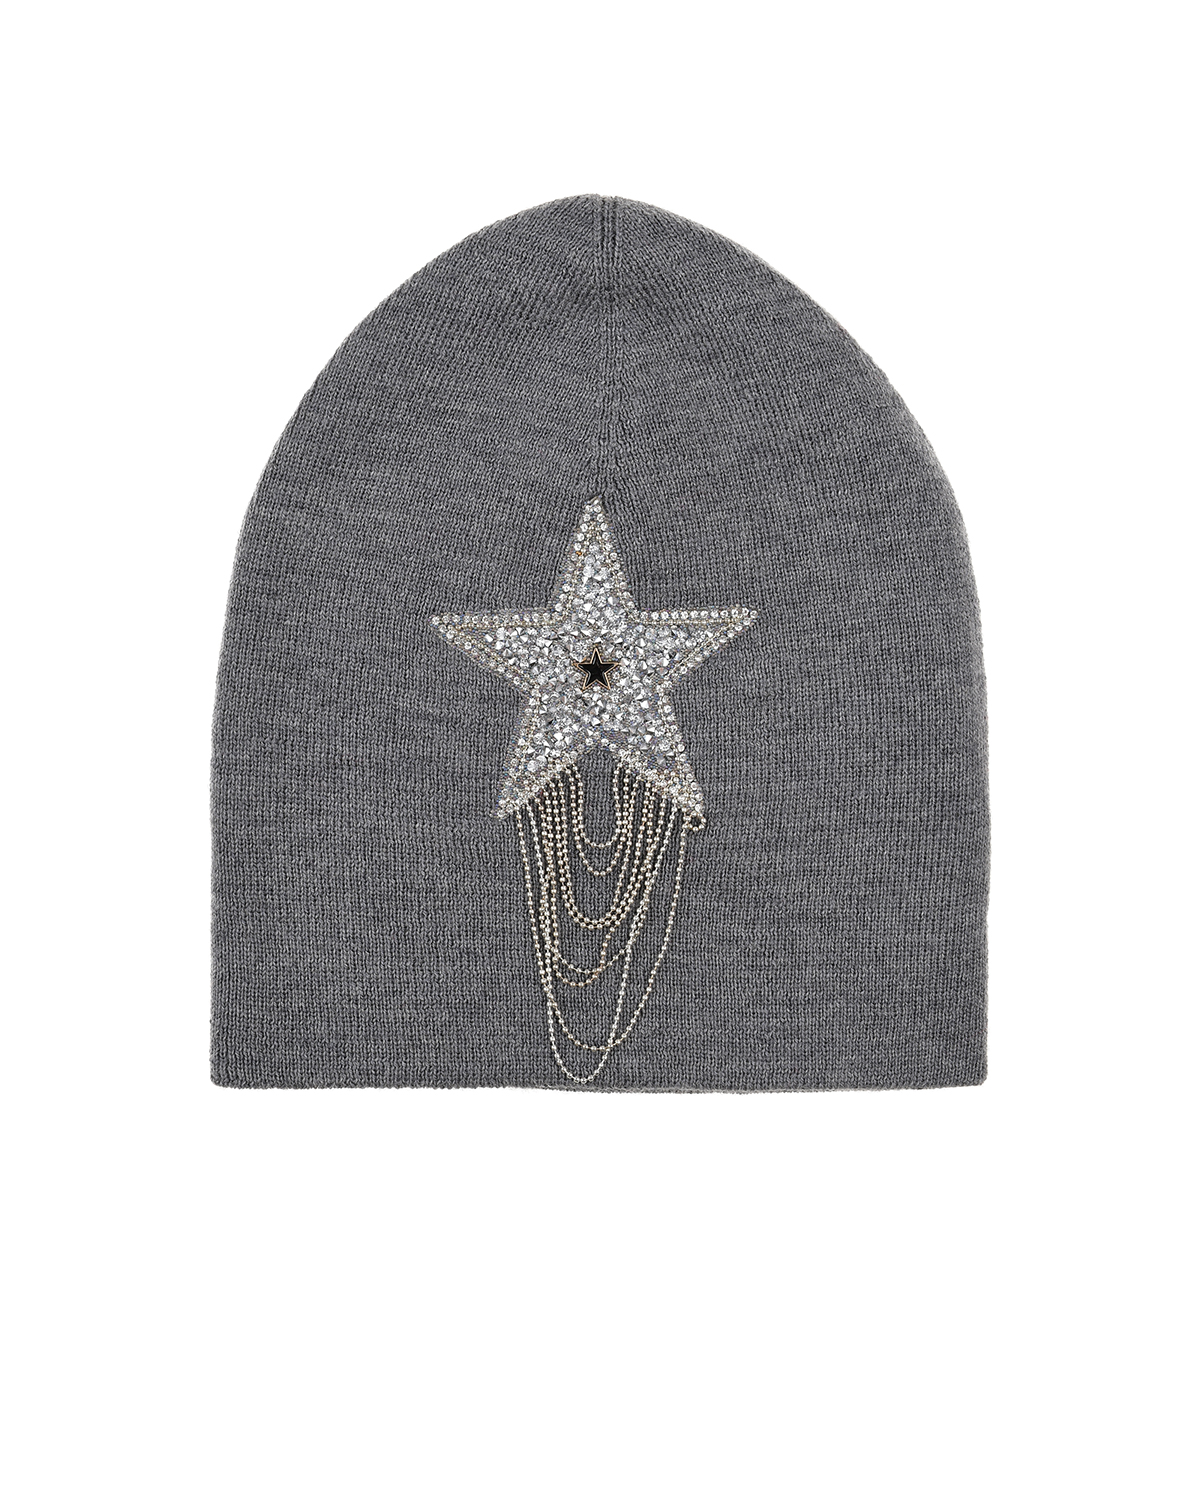 Серая шапка со звездой из стразов Regina детская, размер 55/57, цвет серый - фото 1